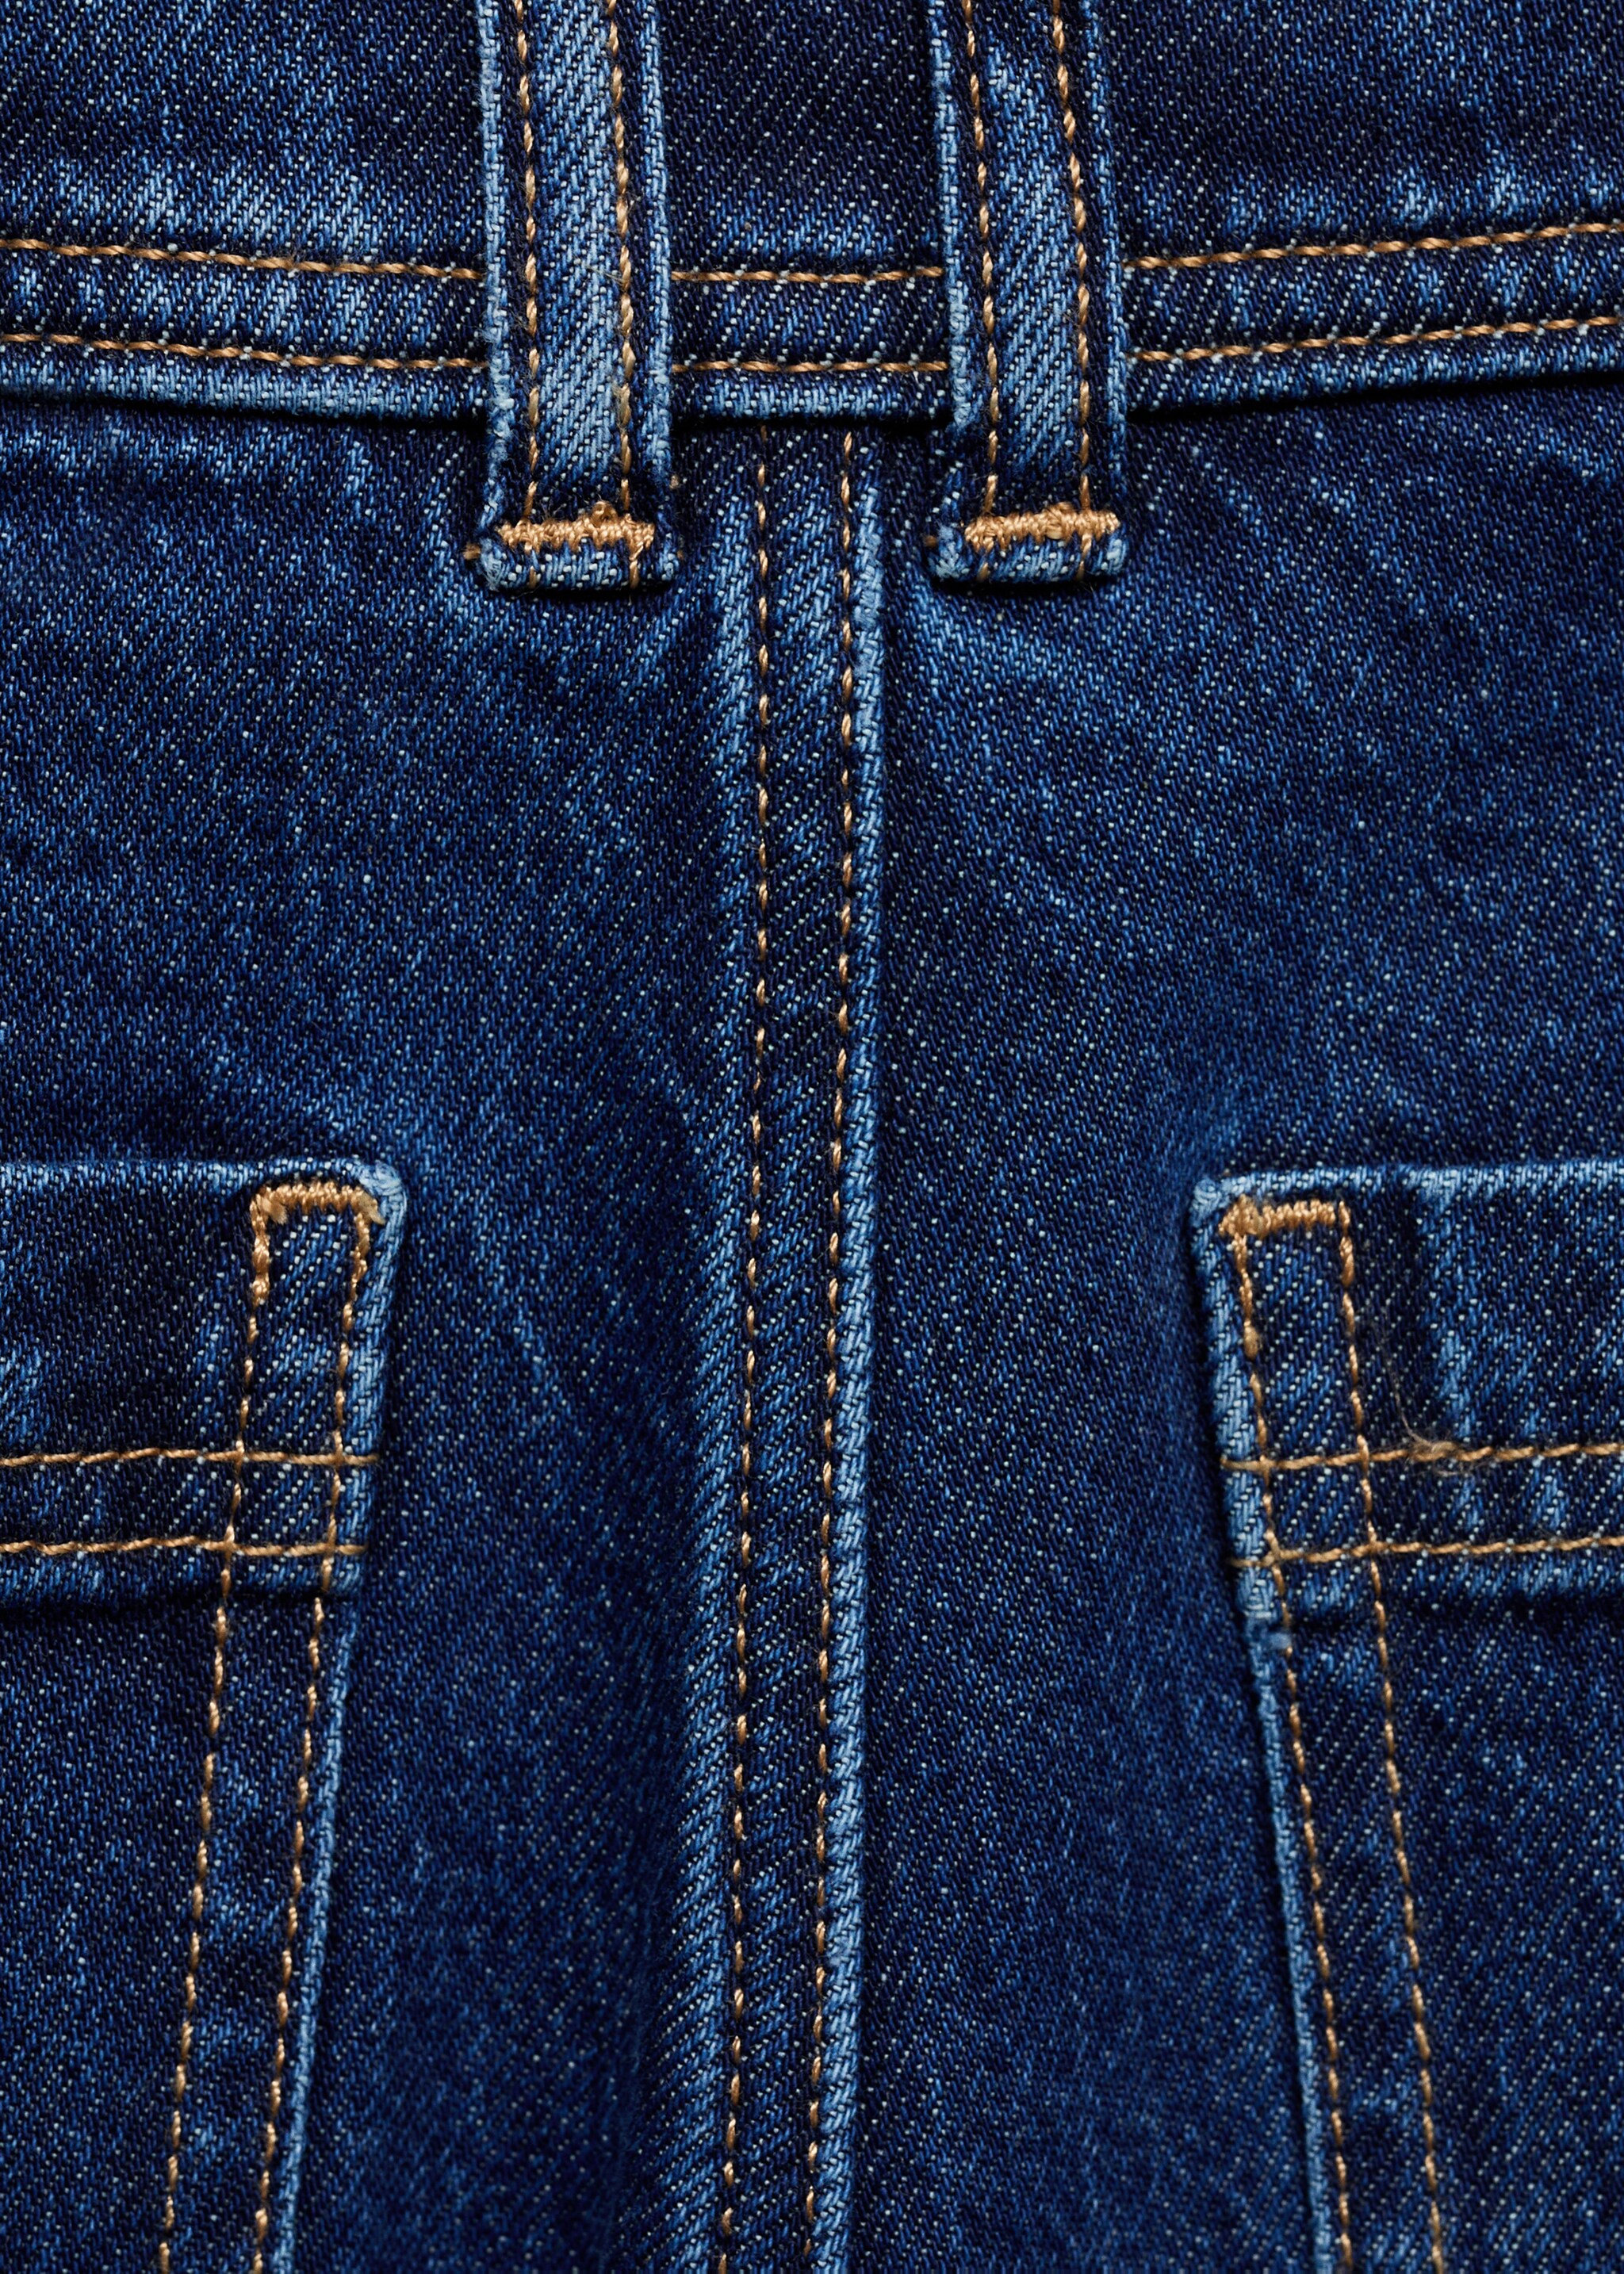 Jeans Catherin culotte tiro alto - Detalle del artículo 0